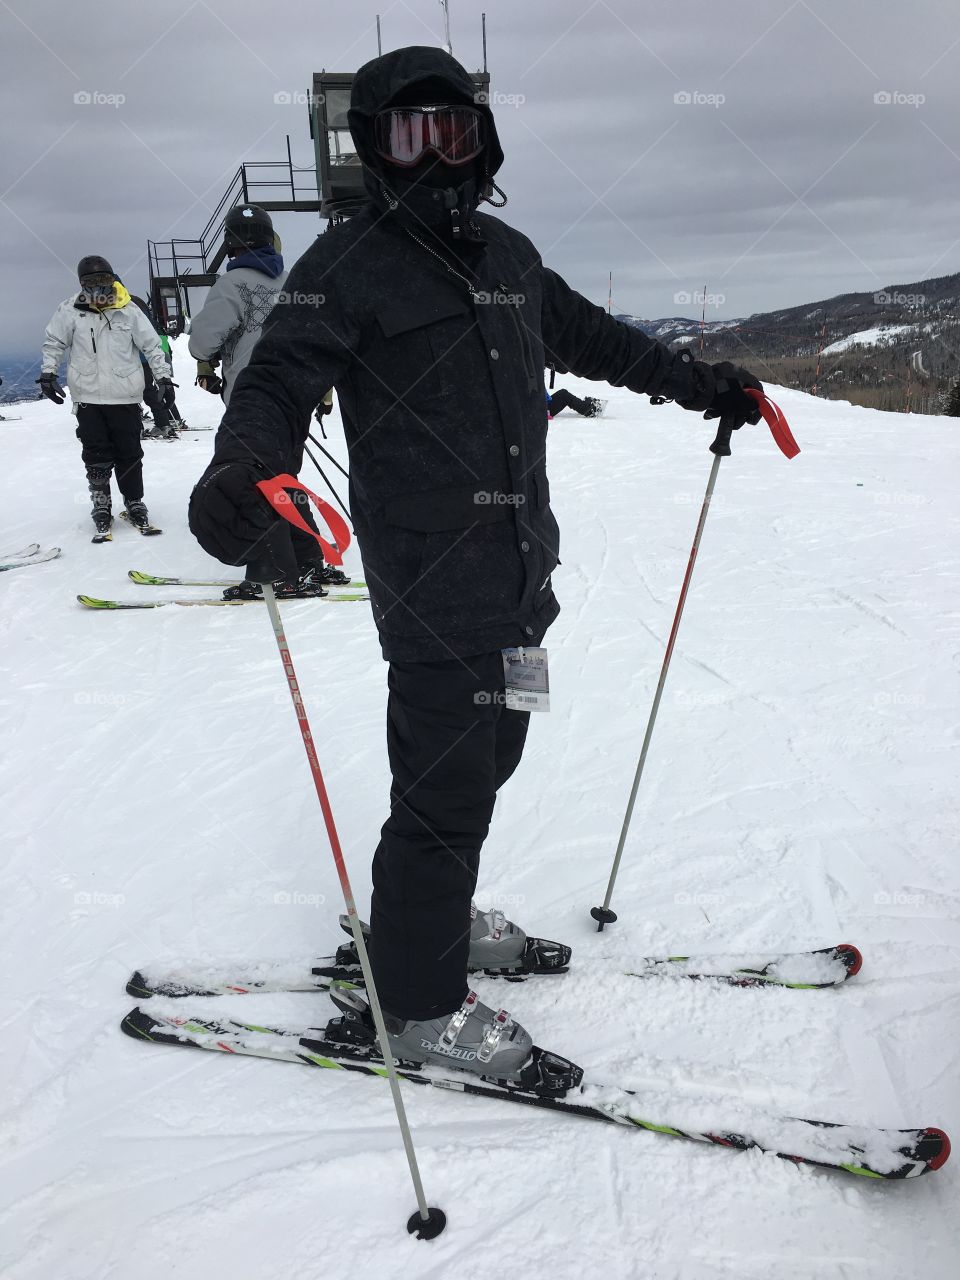 Ski bum